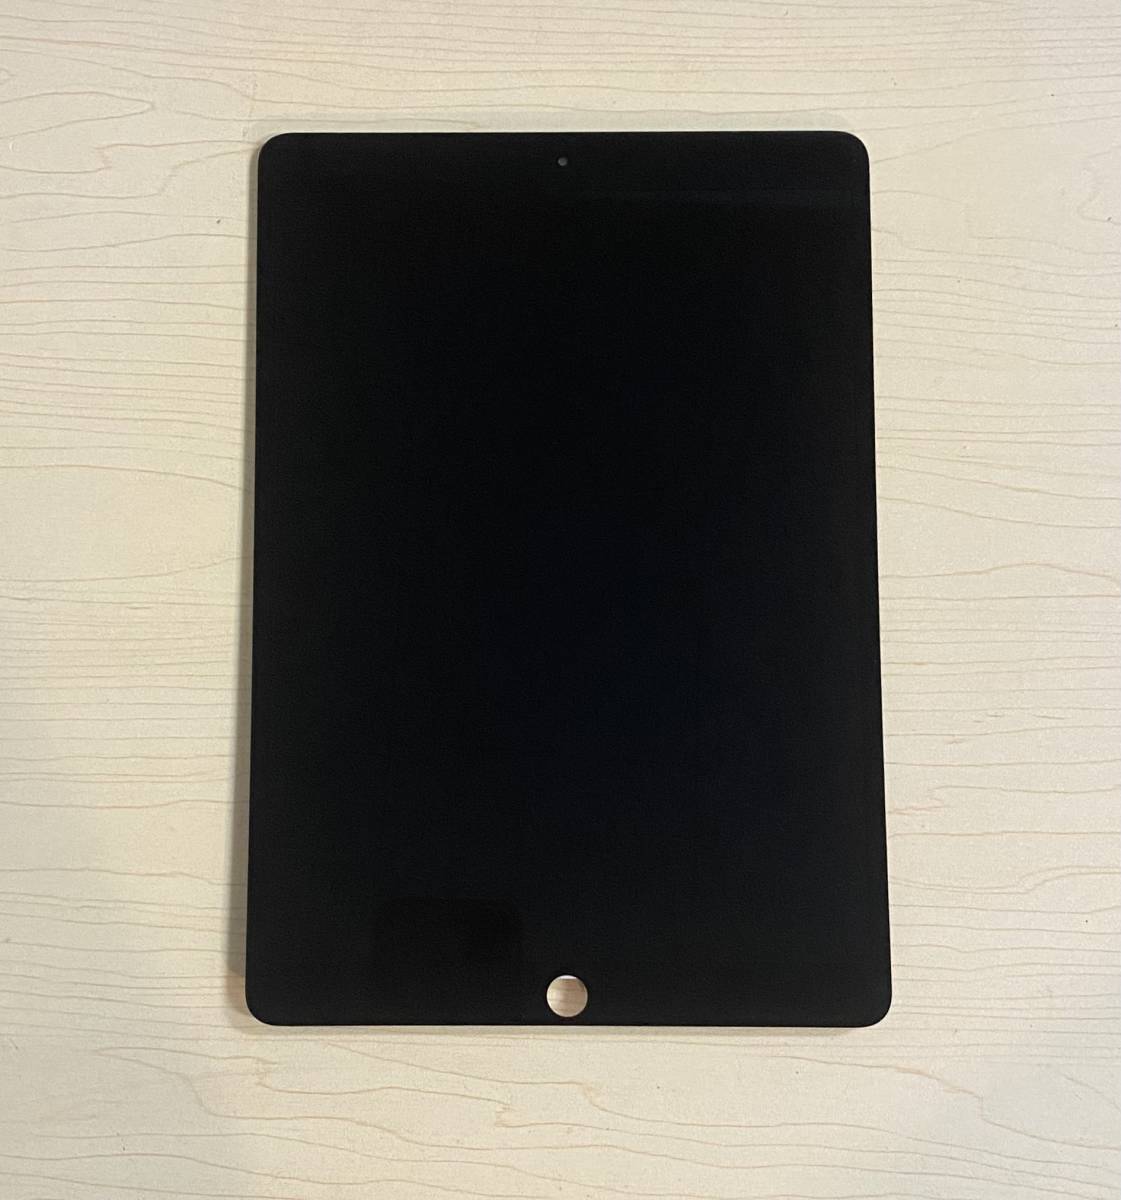 中古 純正品 iPad Pro 10.5 インチ ( 2017 ) 黒 フロントパネル 画面 液晶 修理 交換 。Model A1701 、A1709、A1852。 ジャンク 